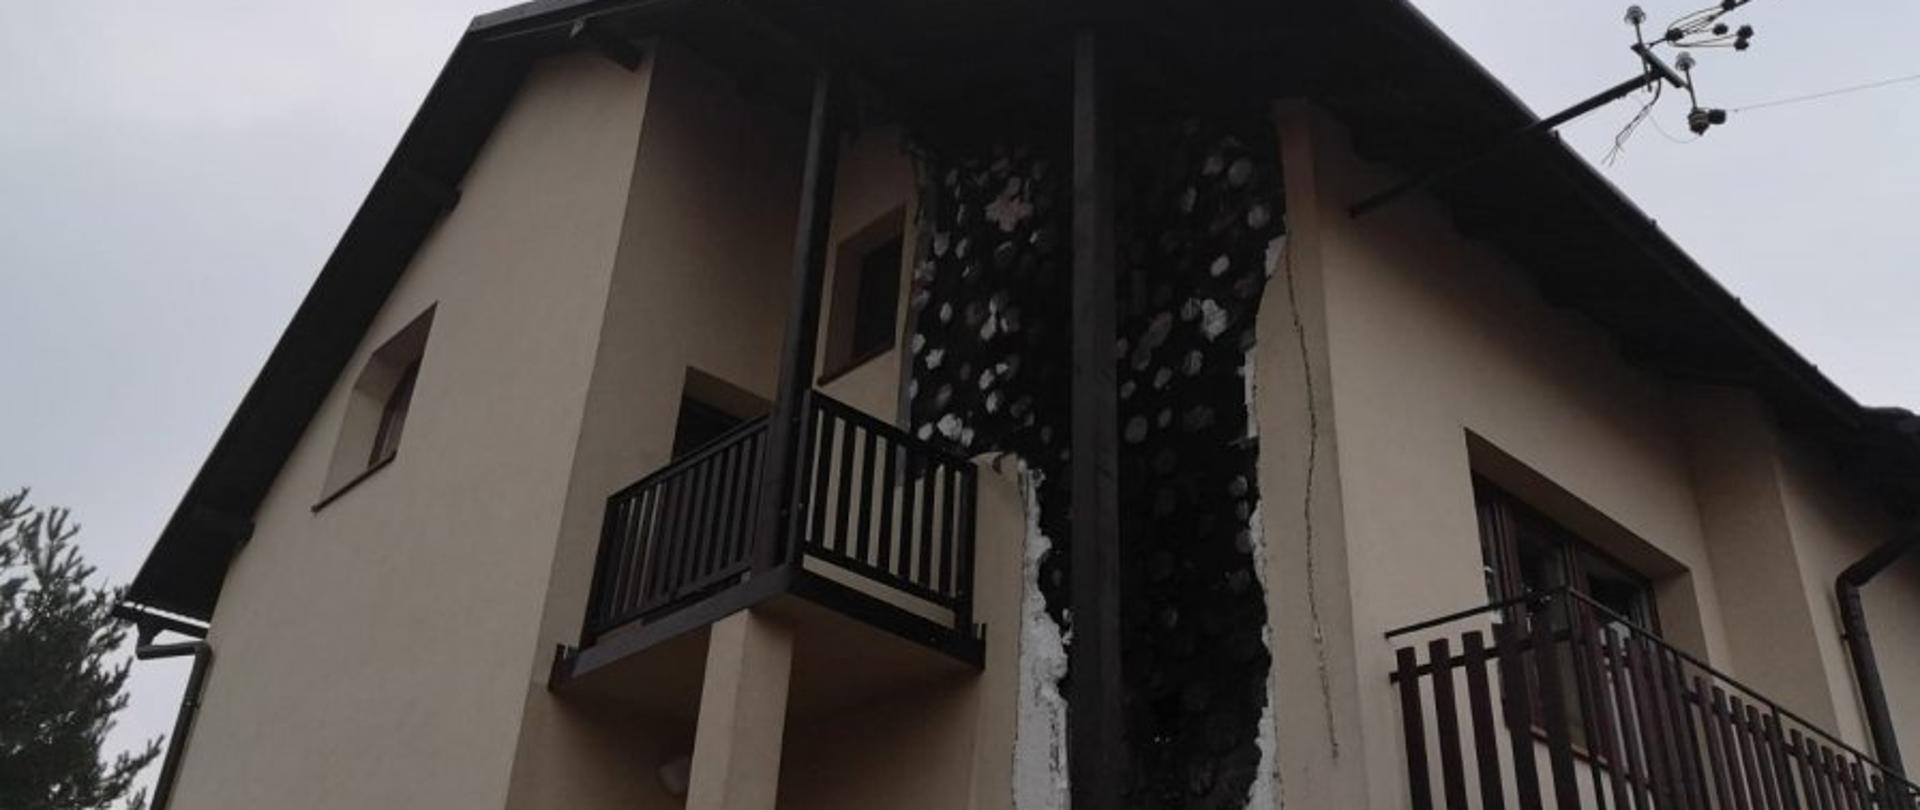 Zdjęcie przedstawia budynek mieszkalny z częściowo spaloną elewacją, czarna zwęglona ściana i widoczny styropian który nie uległ zpaleniu